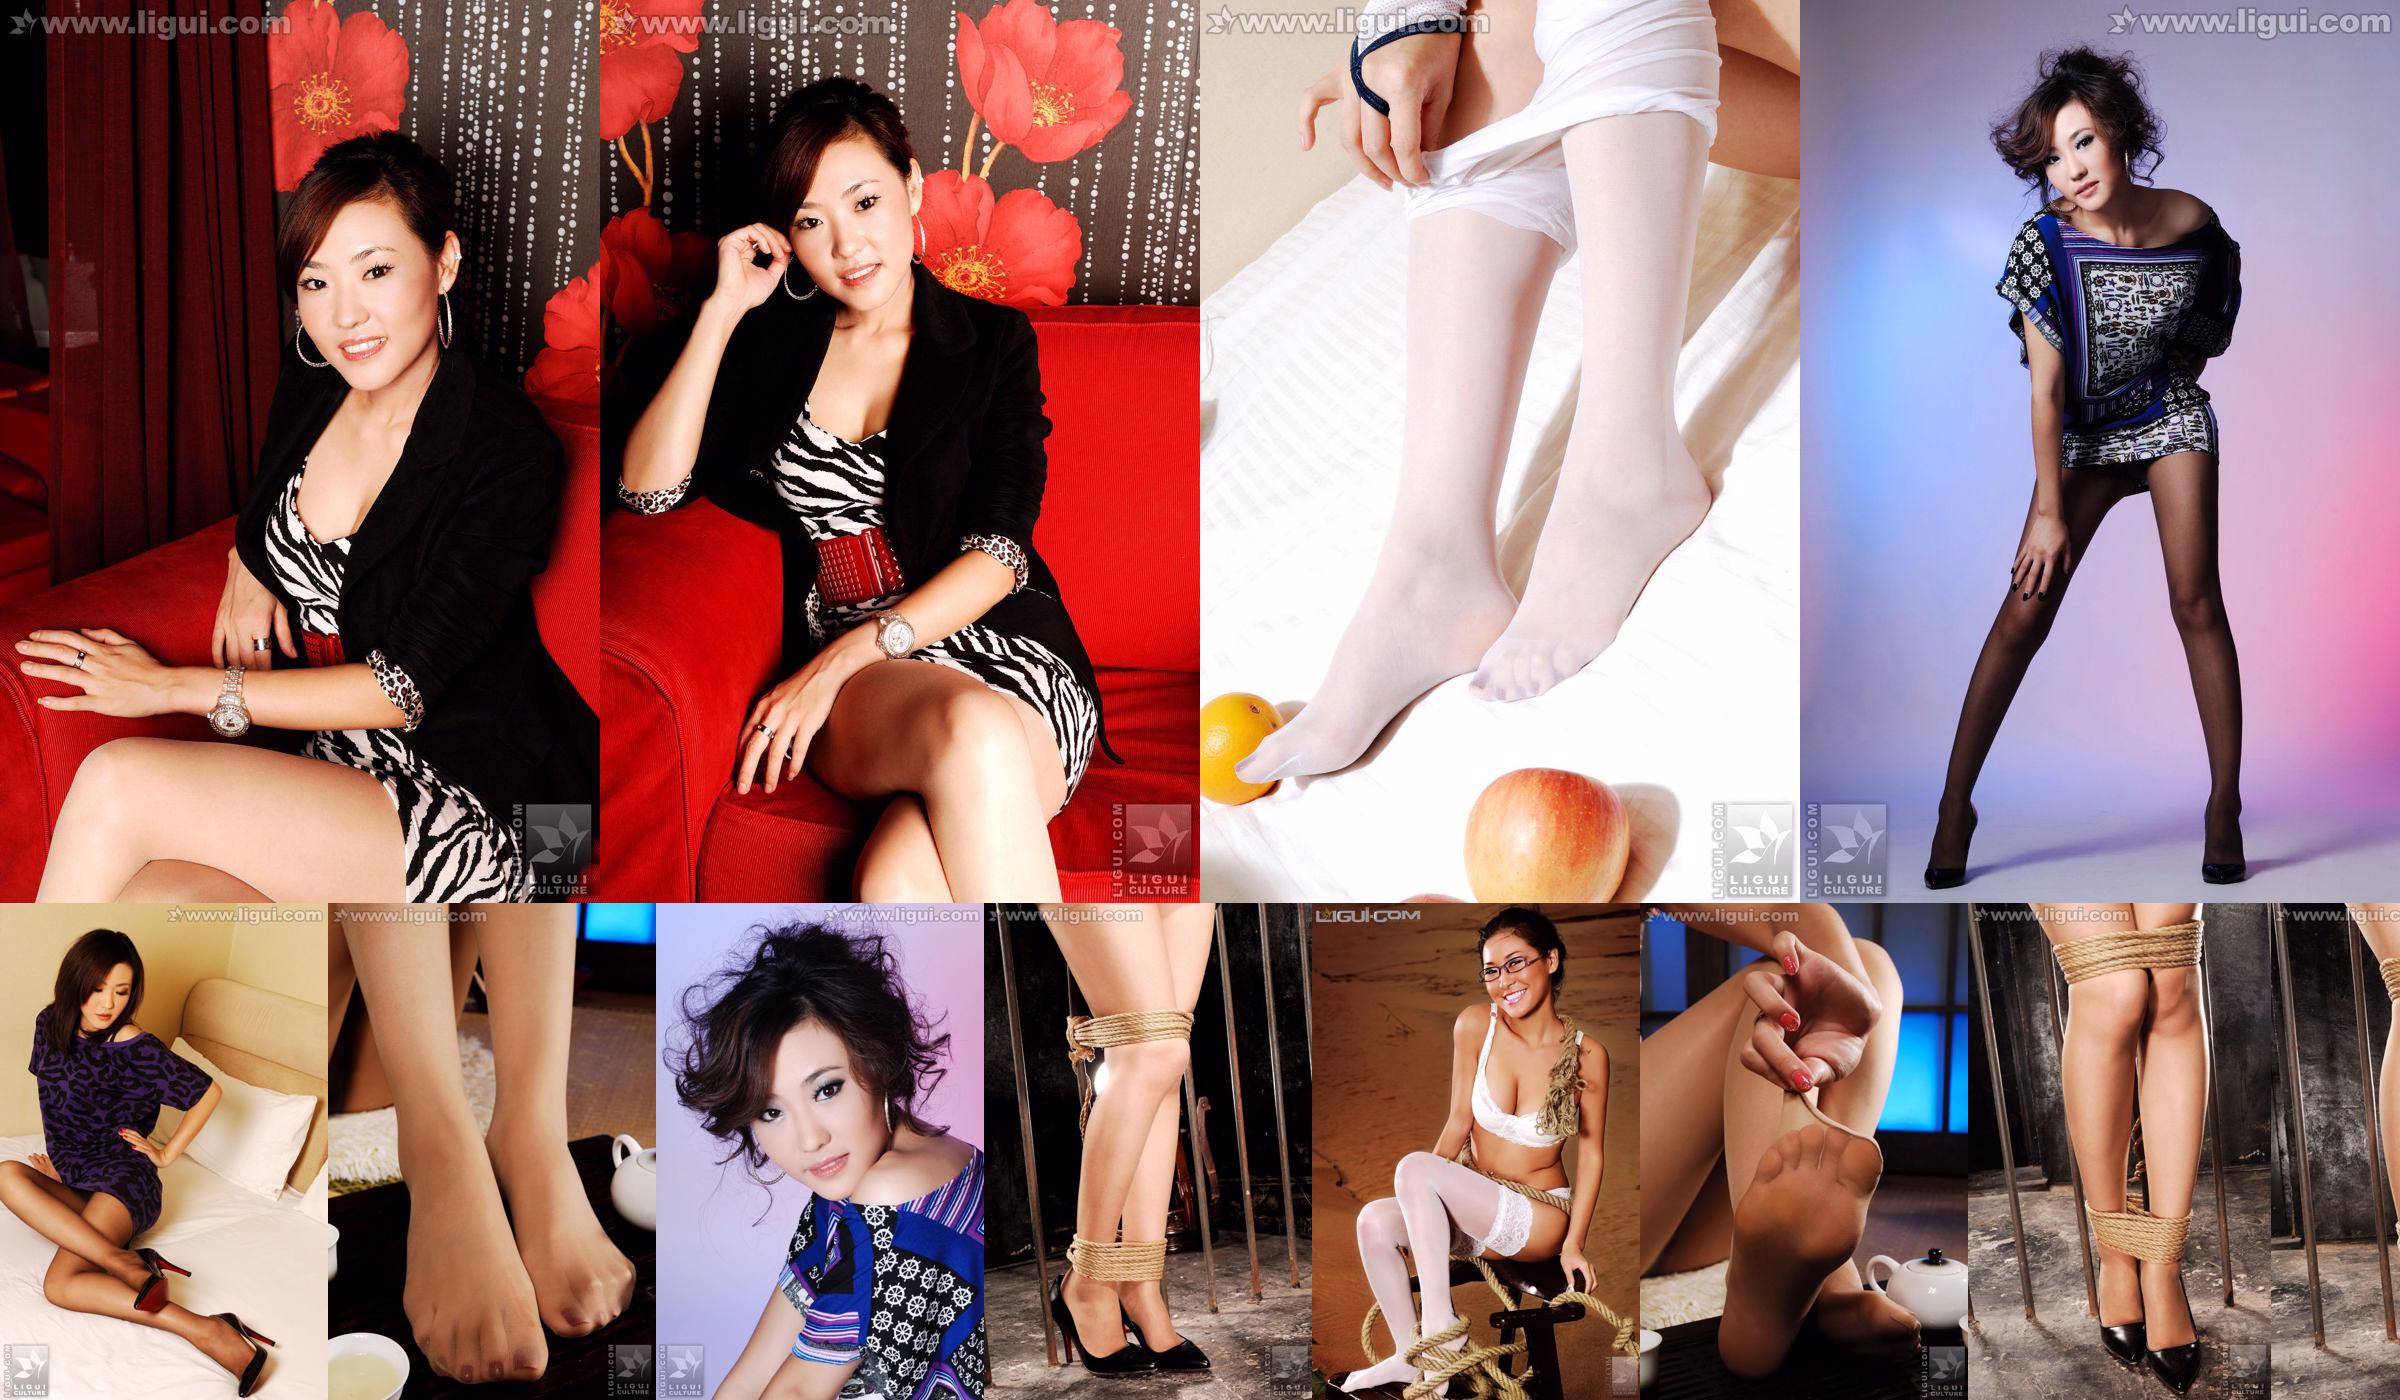 Модель CoCo "Красота ног в красочном мире" [丽 柜 LiGui] Фотография красивых ног и нефритовых ступней. No.68209b Страница 2